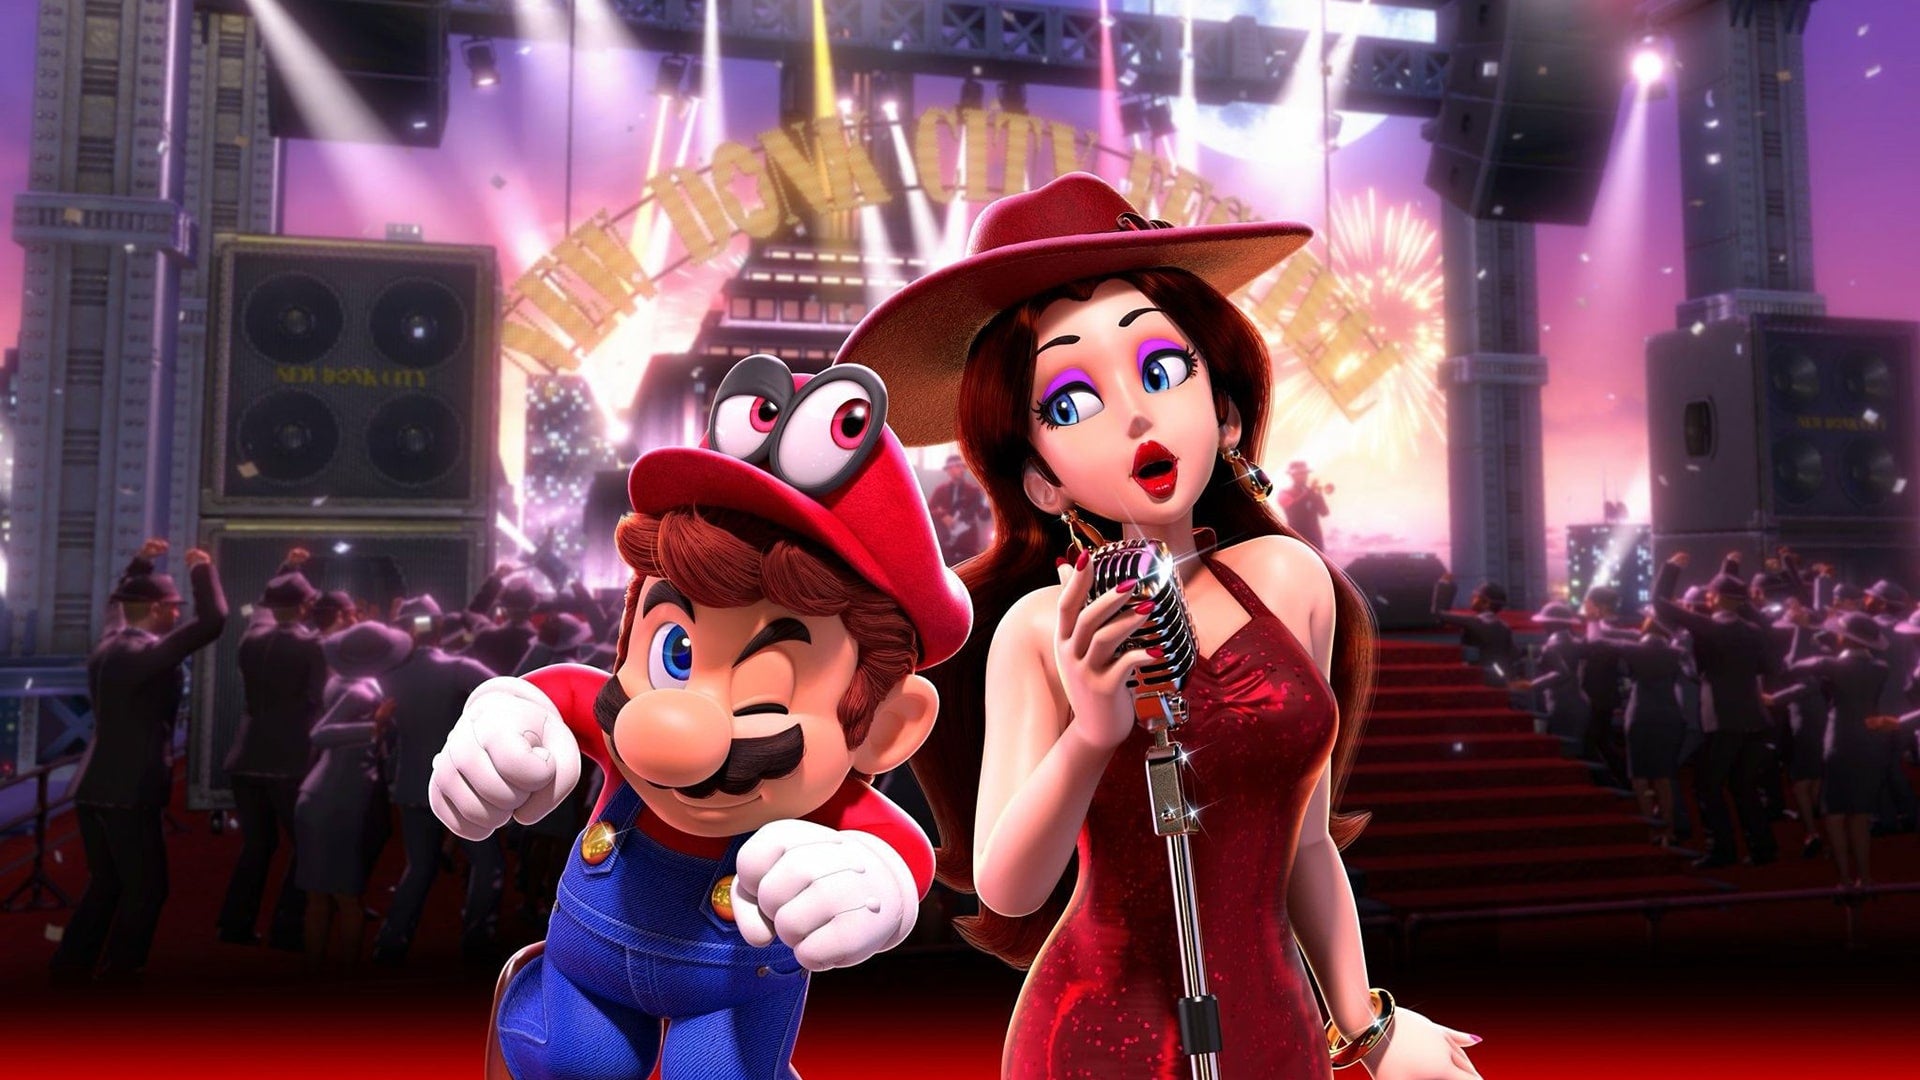 Super Mario Odyssey Original Soundtrack